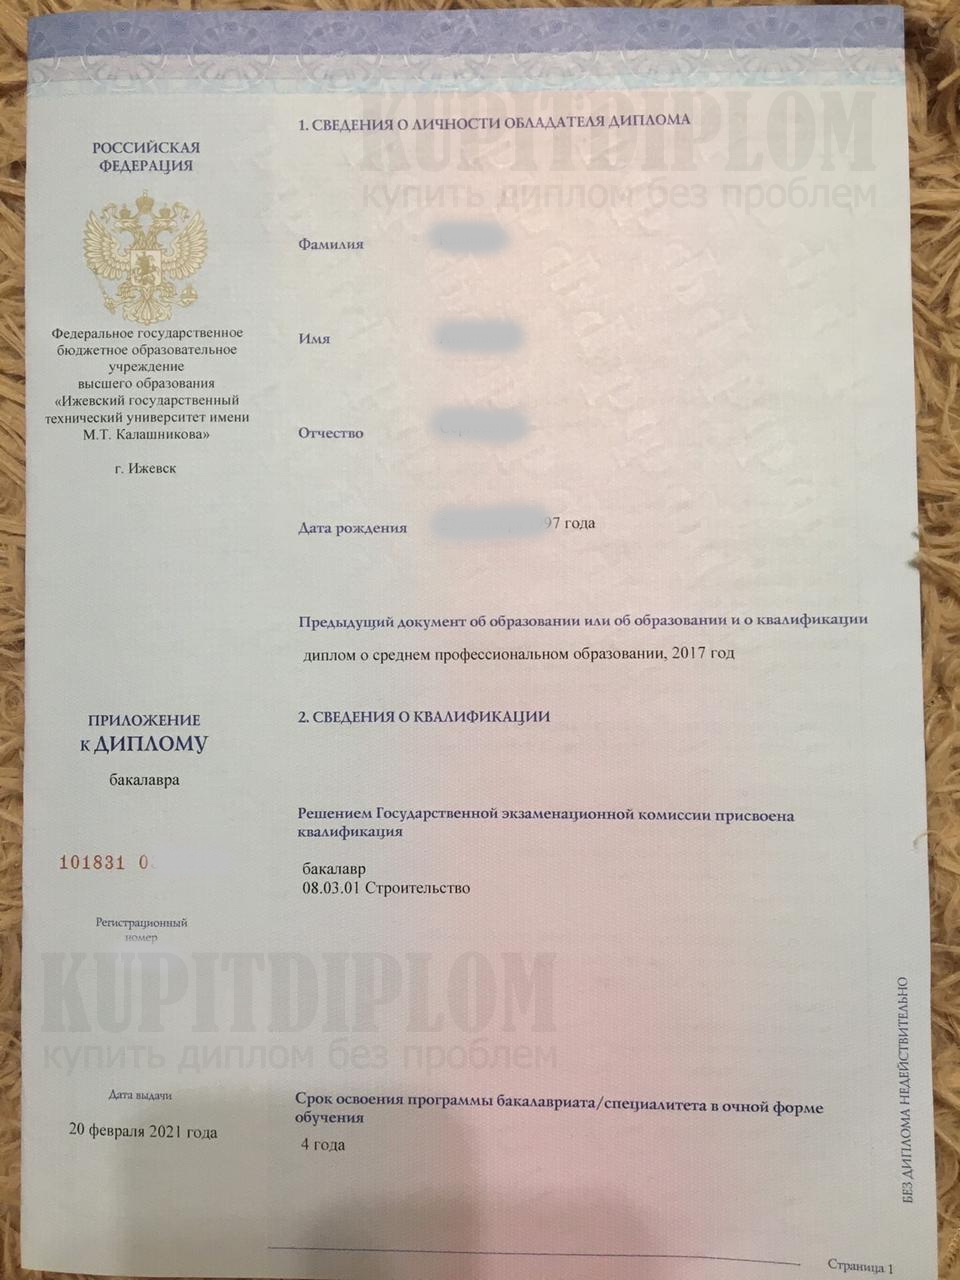 Приложение к диплому 2021 года Ижевского государственного технического университета им. М. Т. Калашникова